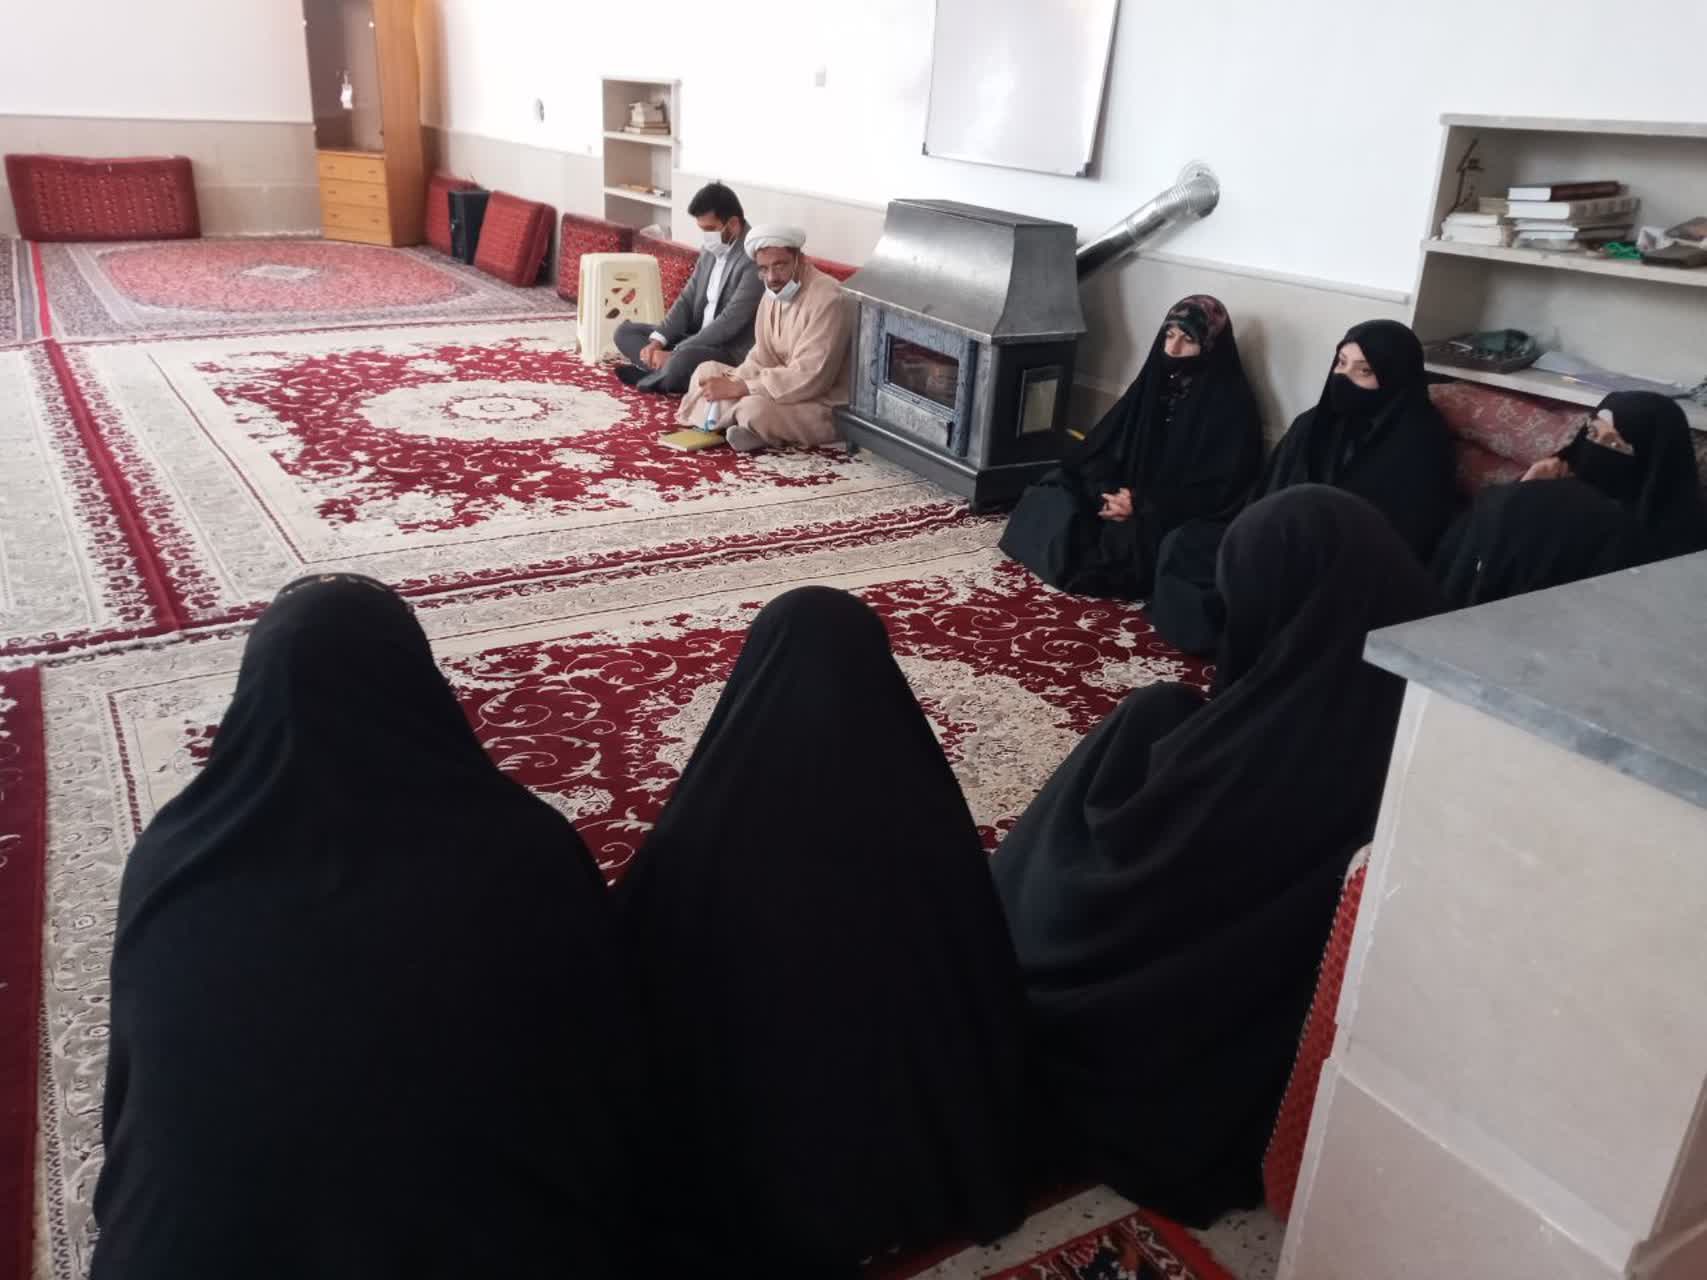 جلسه با مداحان خانم اعضای کانون ویژه شهادت حضرت زهرا در مسجد برگذار شد